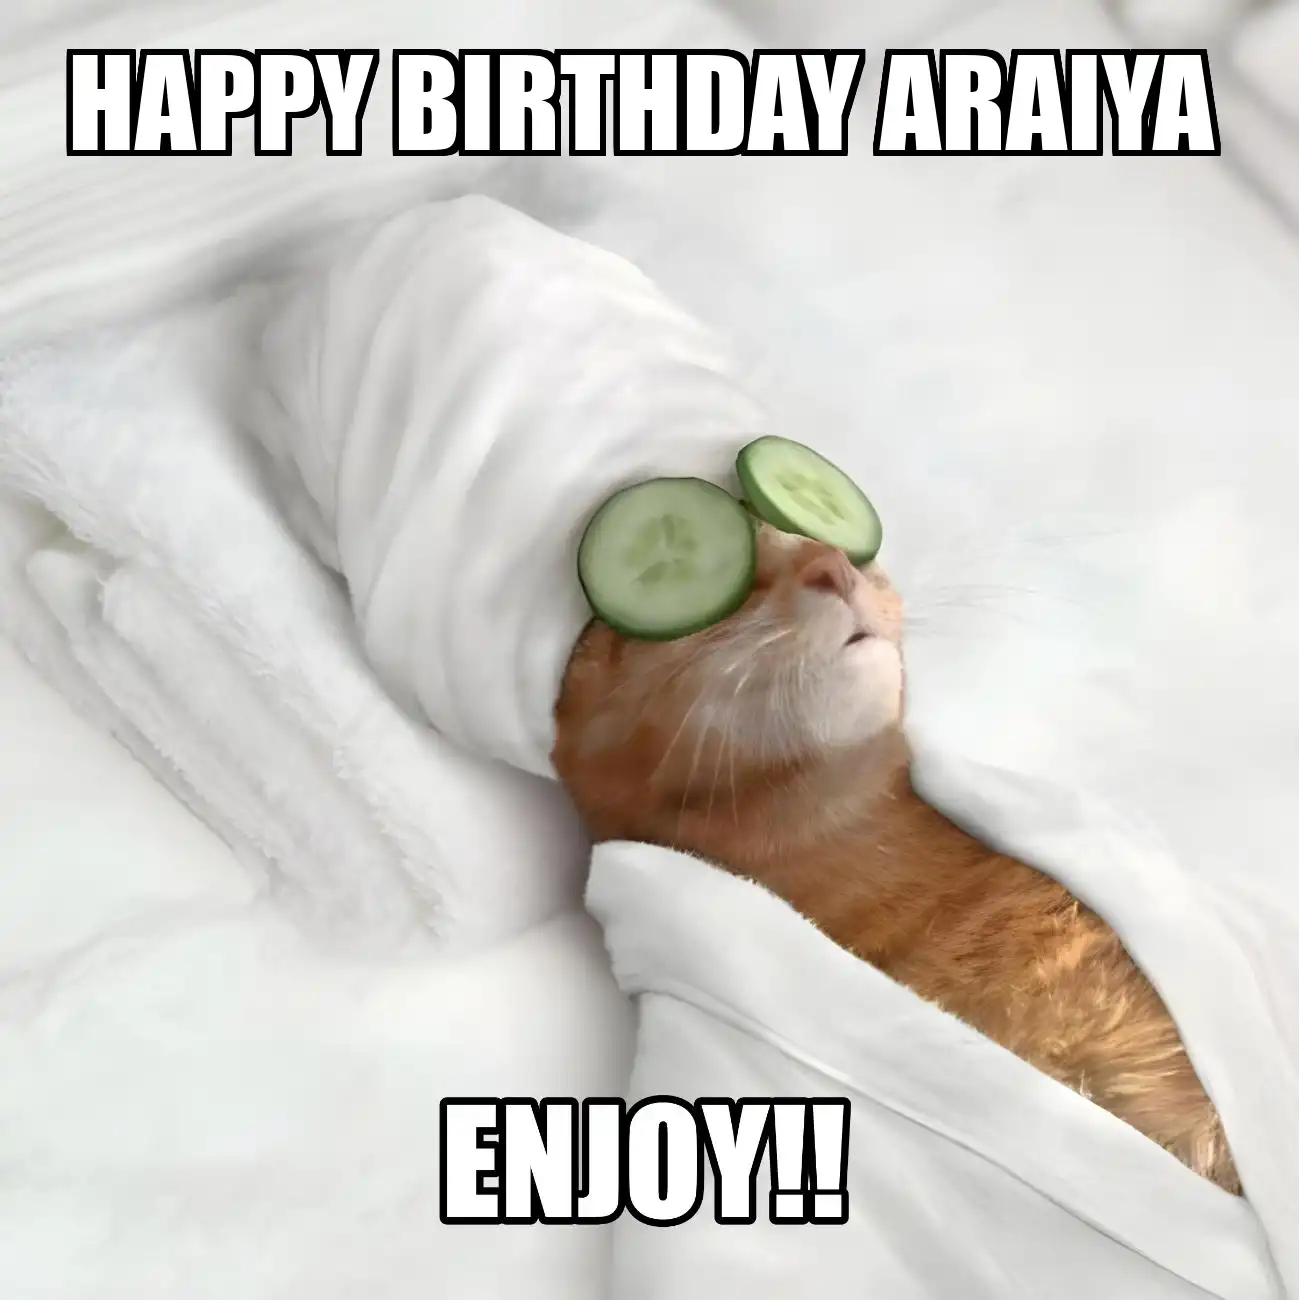 Happy Birthday Araiya Enjoy Cat Meme